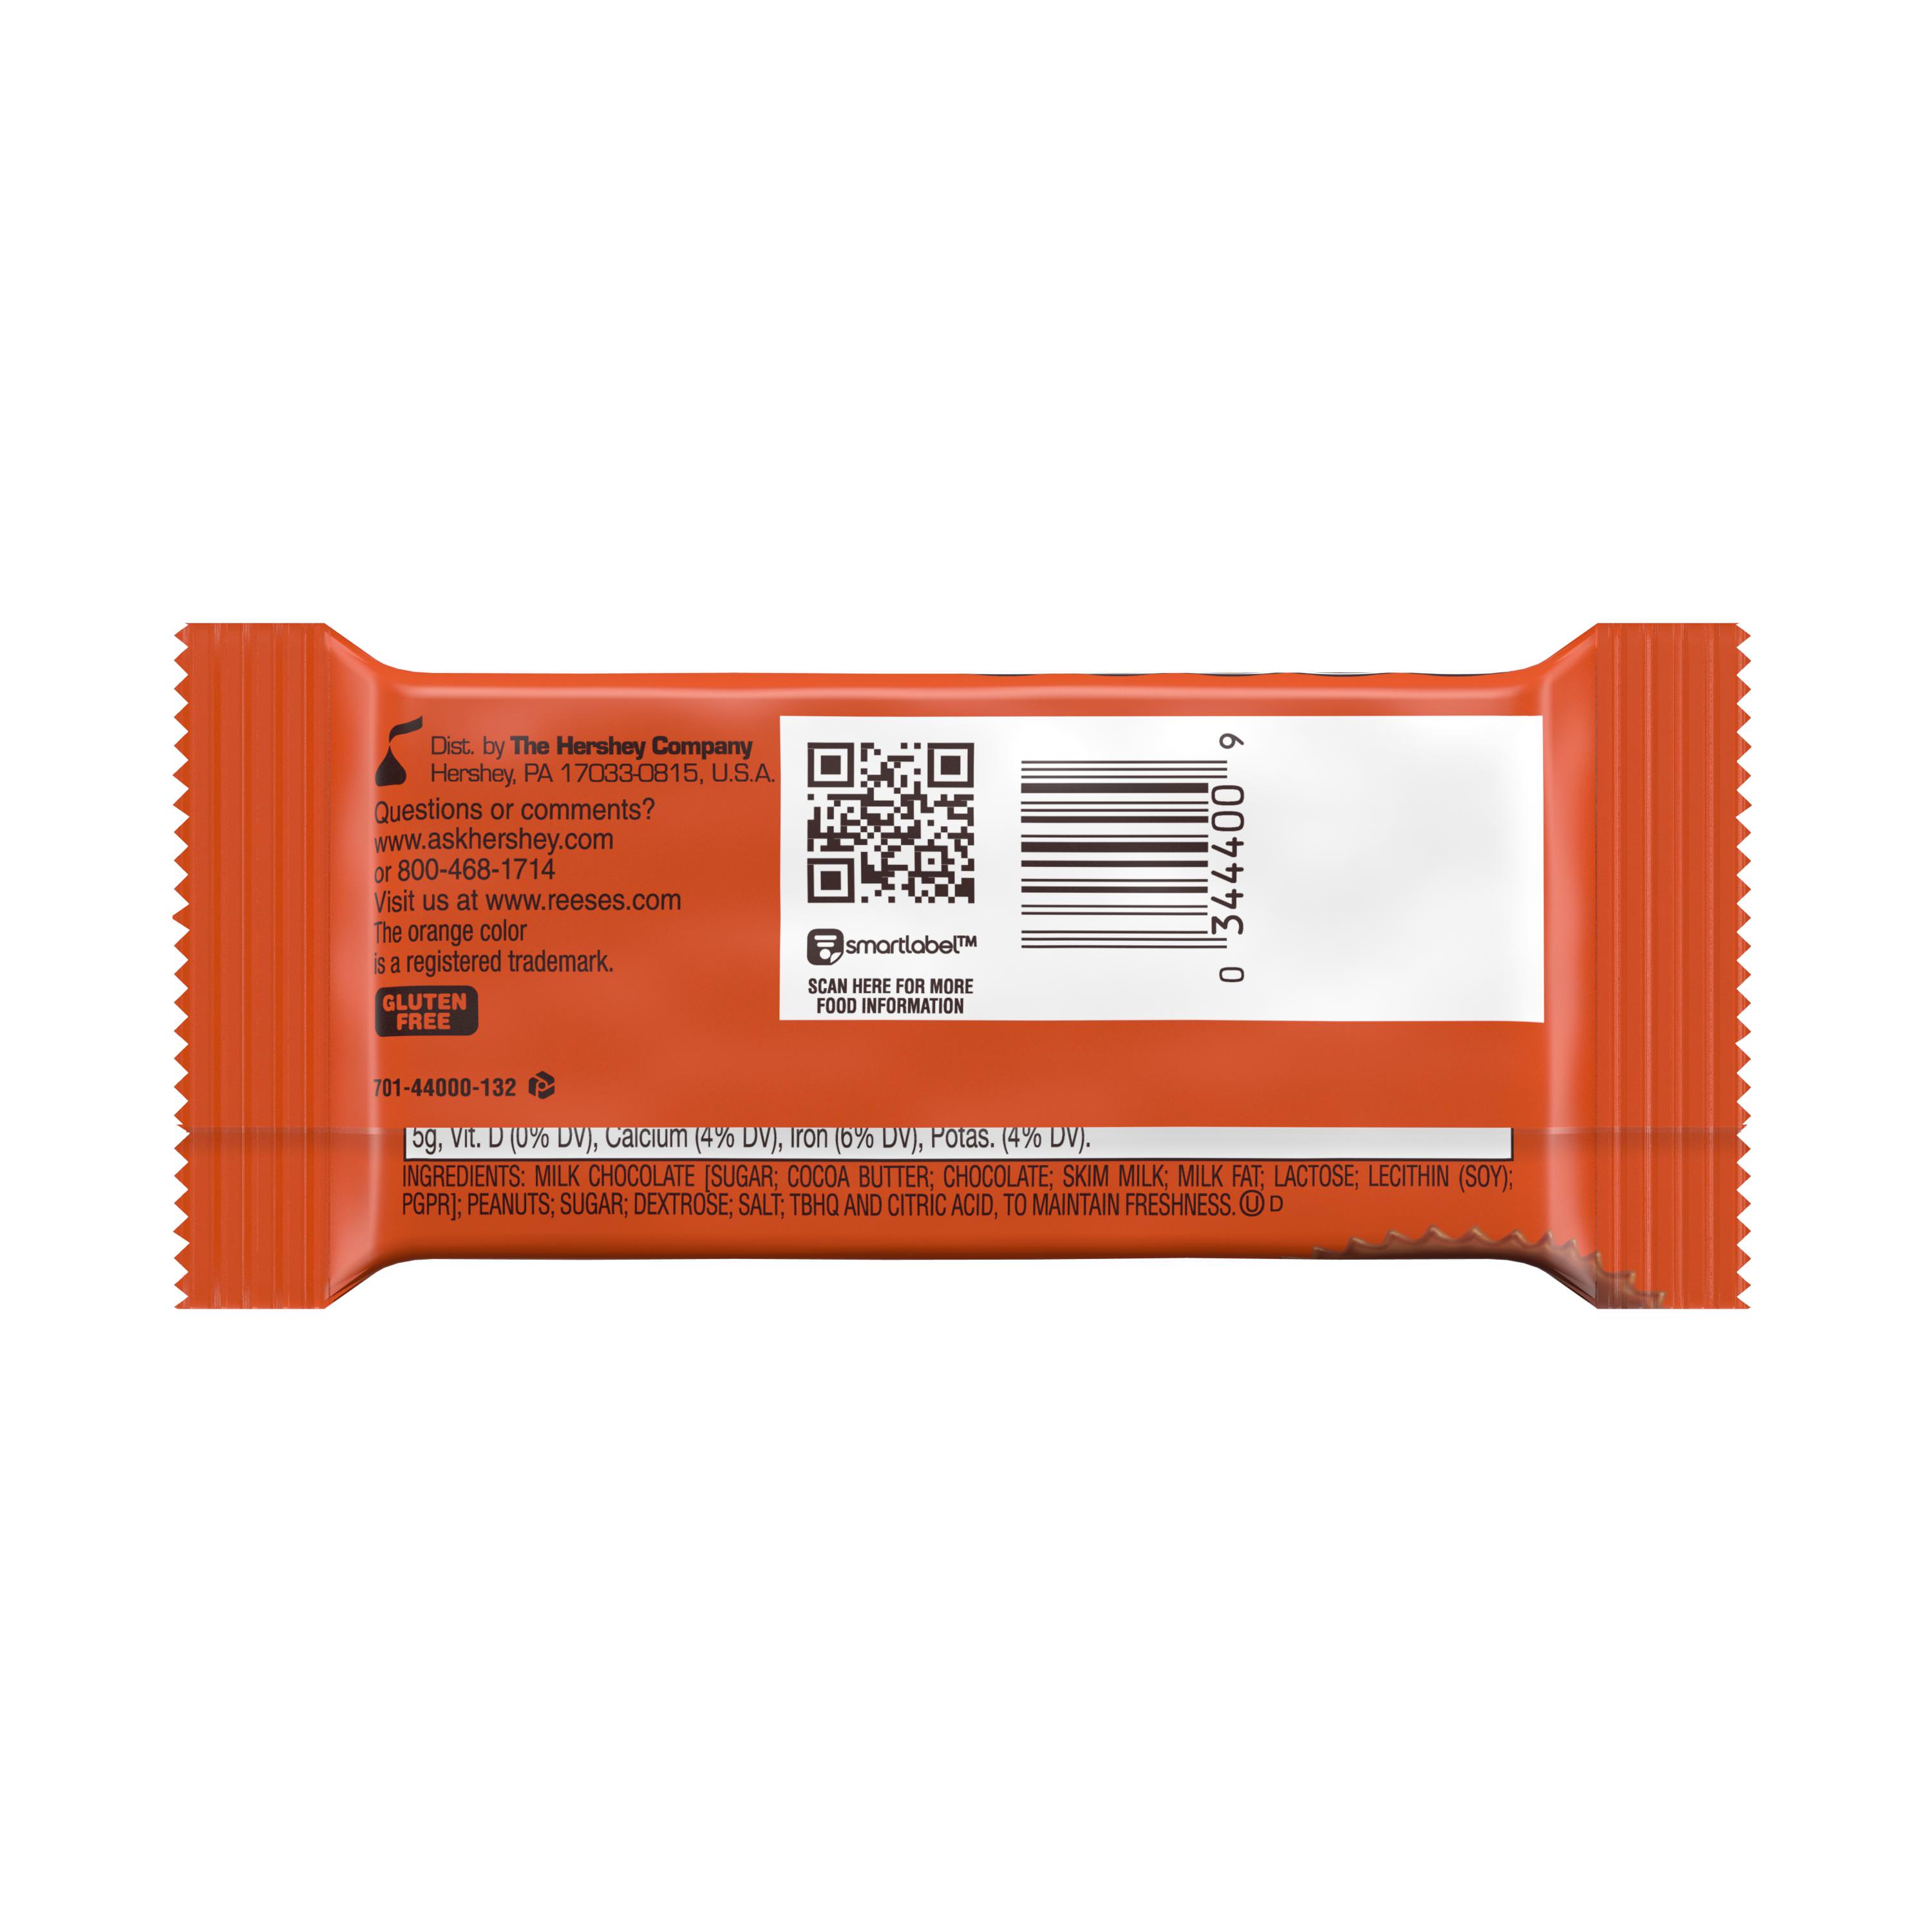 L’arrière de l’emballage orange sur fond blanc avec un encadré blanc, un QR code et un code-barre